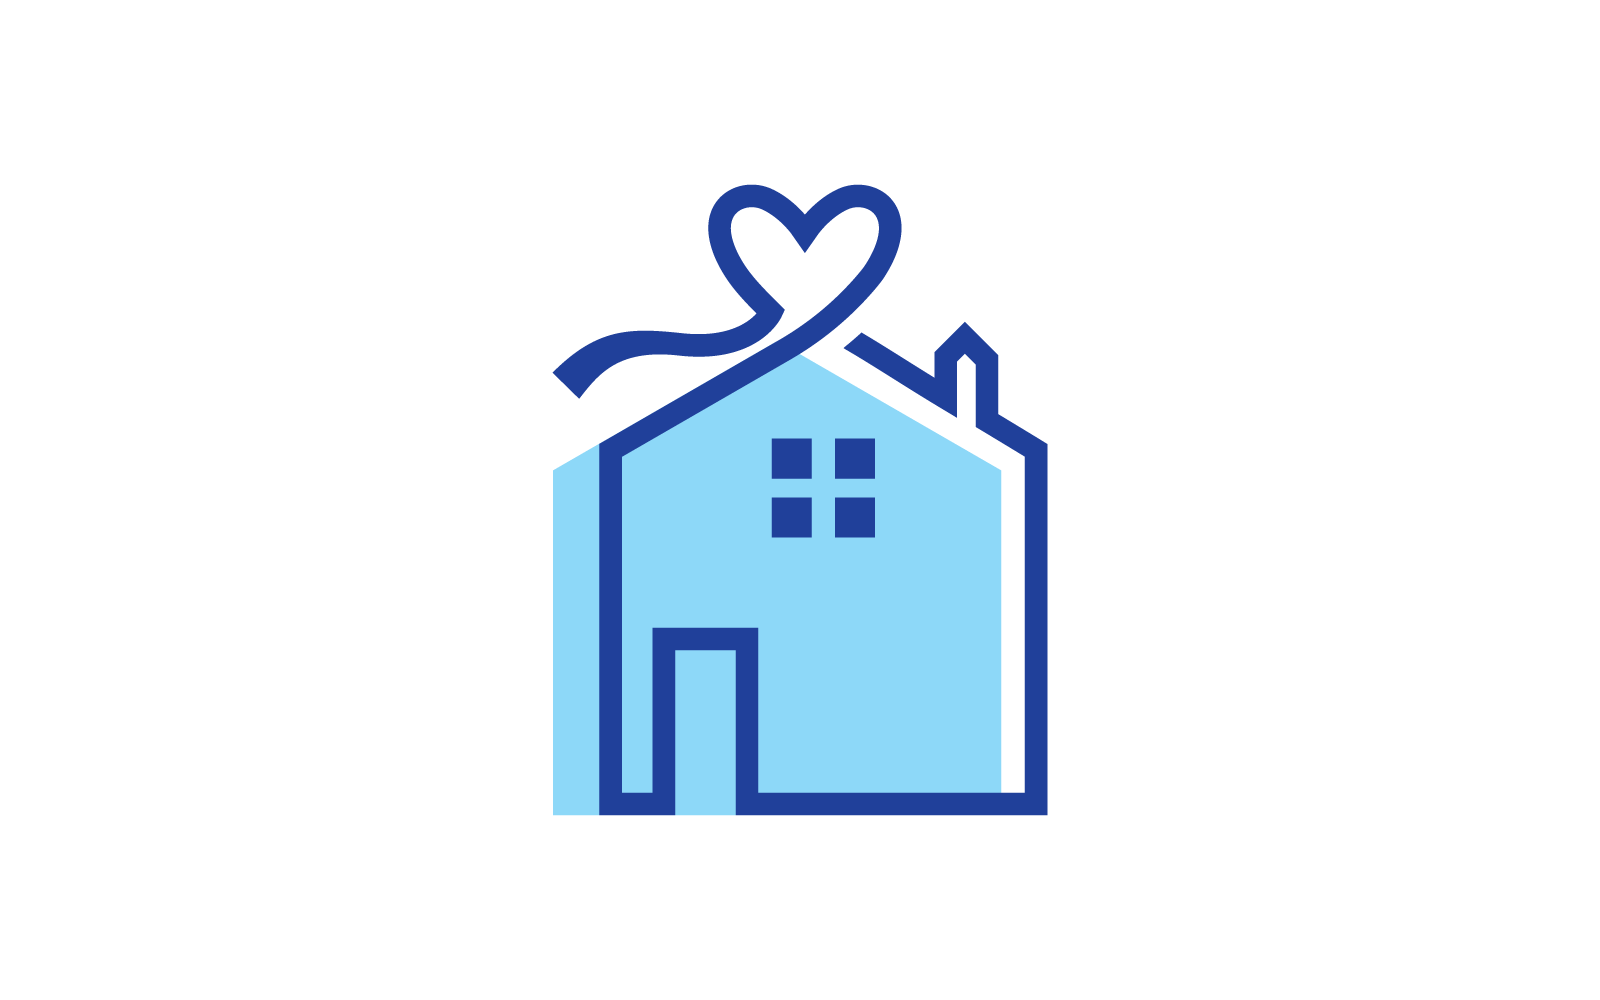 House gift logo vector illustrations design